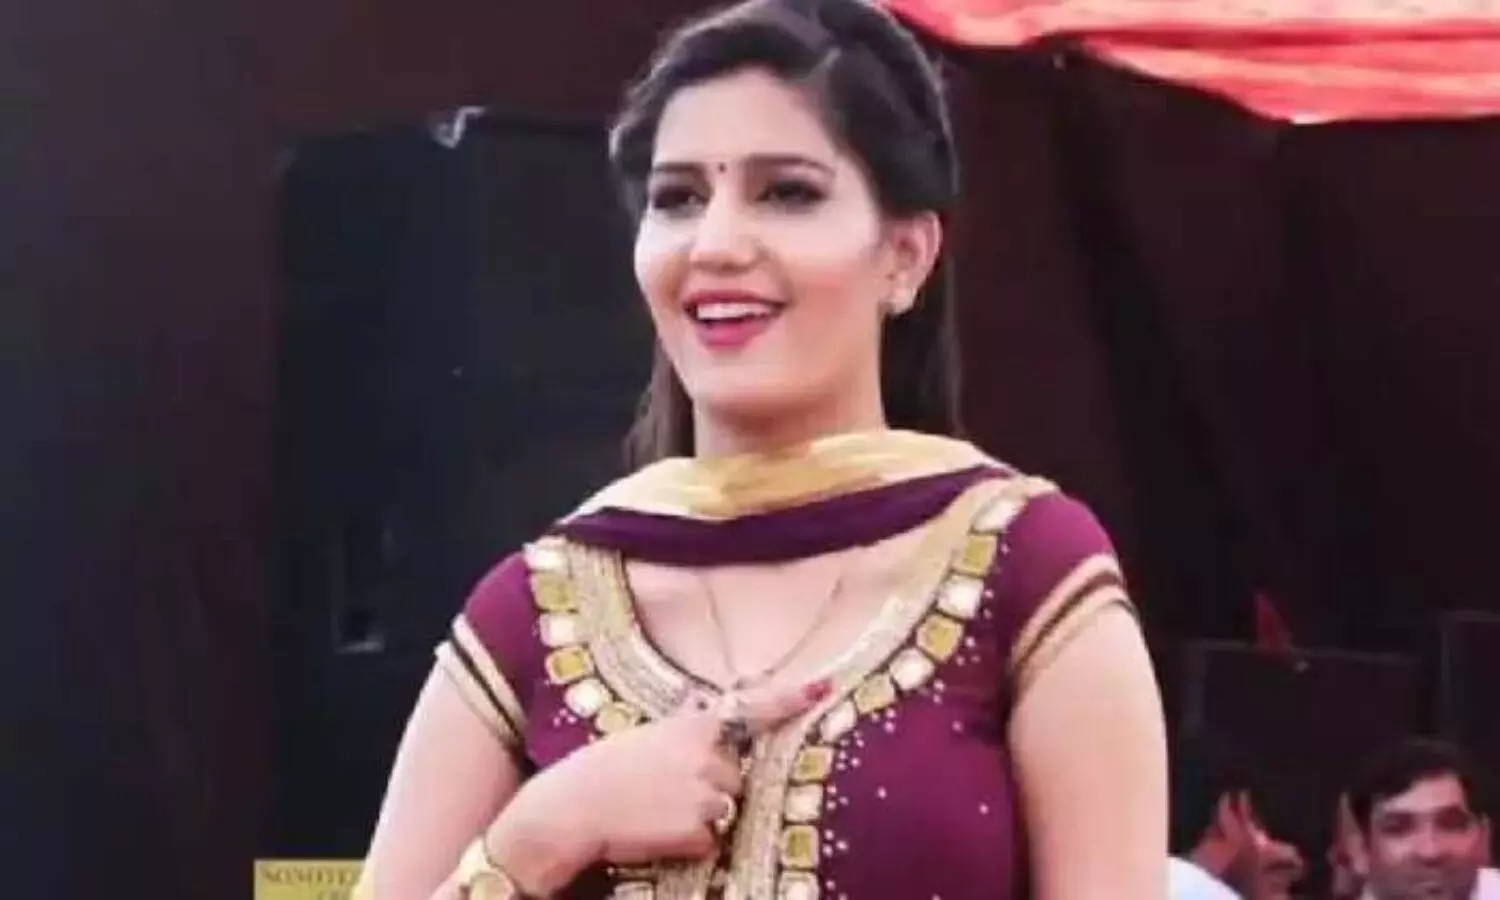 Sapna Choudhary Video